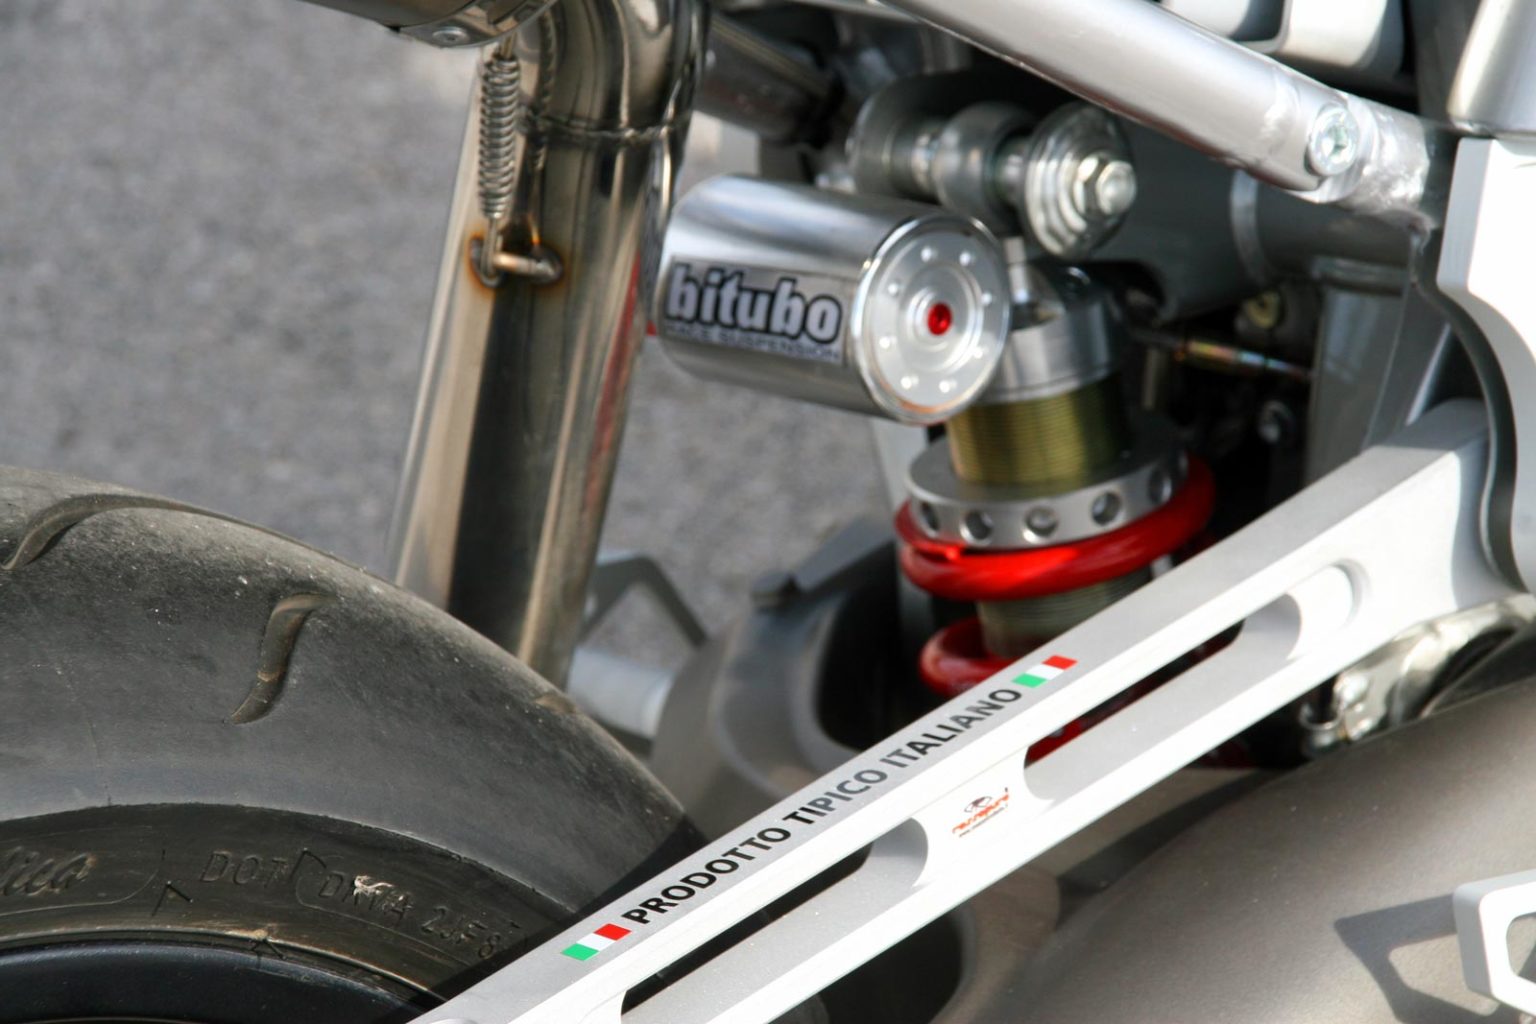 Moto Guzzi Griso "Zero" by Officine Rossopuro